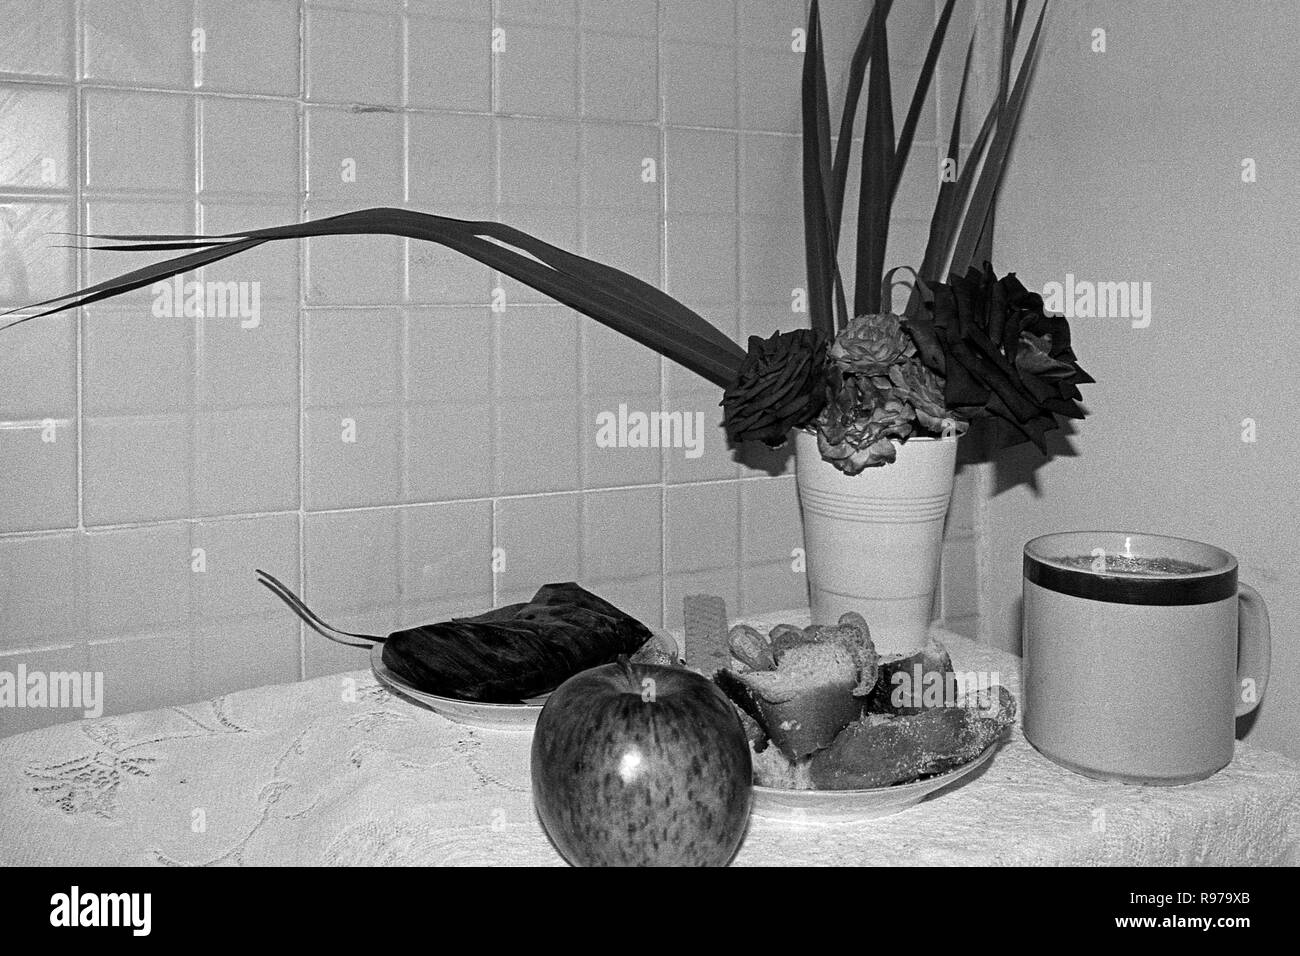 Tag der Toten wahr: Blumen, Kaffee, süßes Brot, einem Apfel und einem tamal in Bananenblätter gewickelt Stockfoto